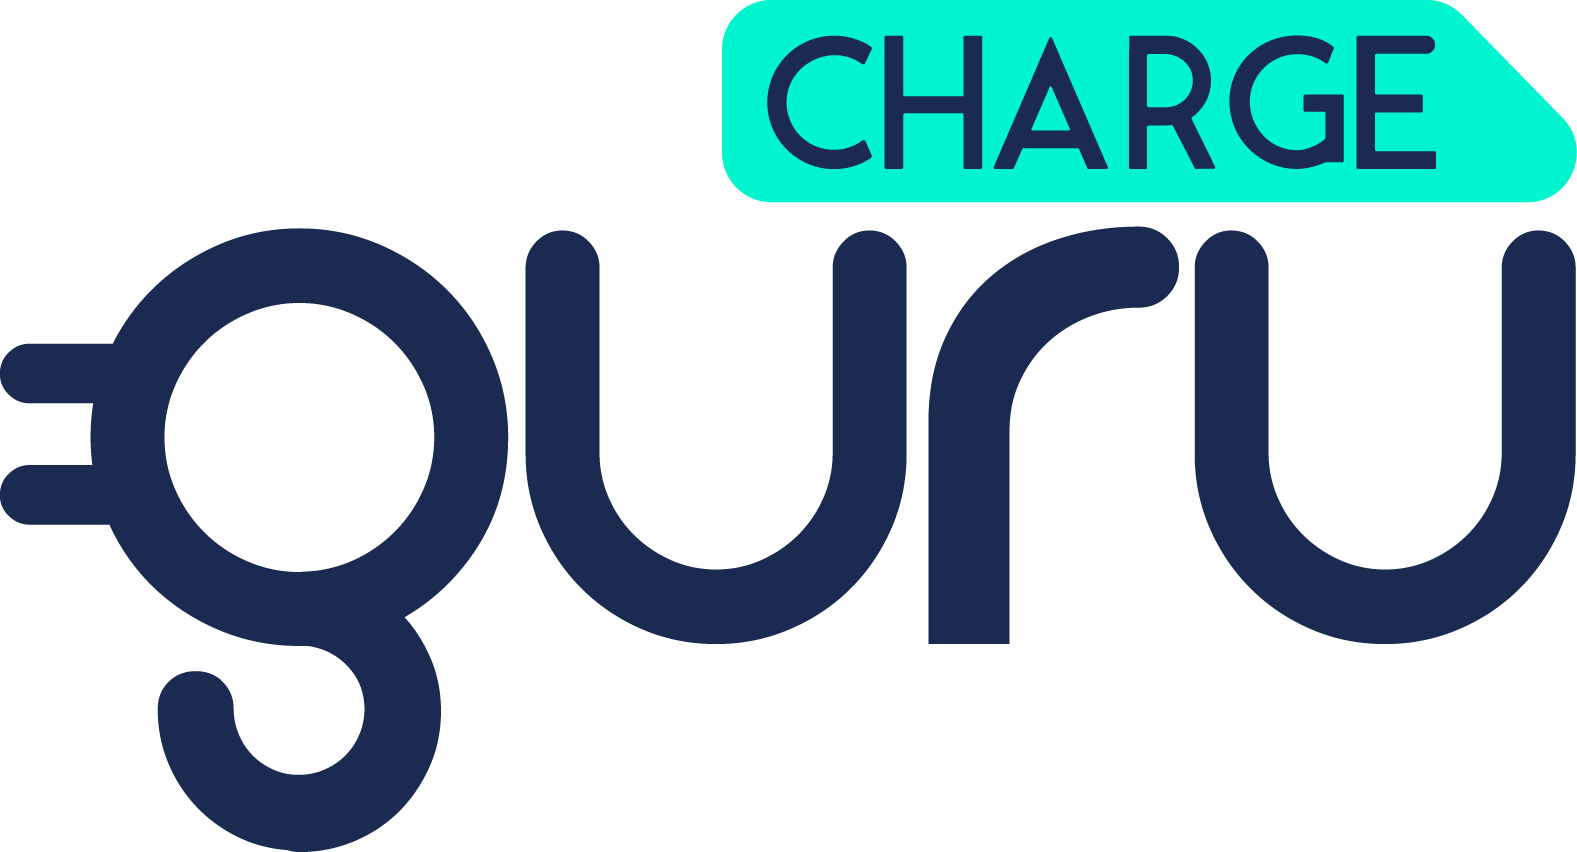 Chargeguru Logo